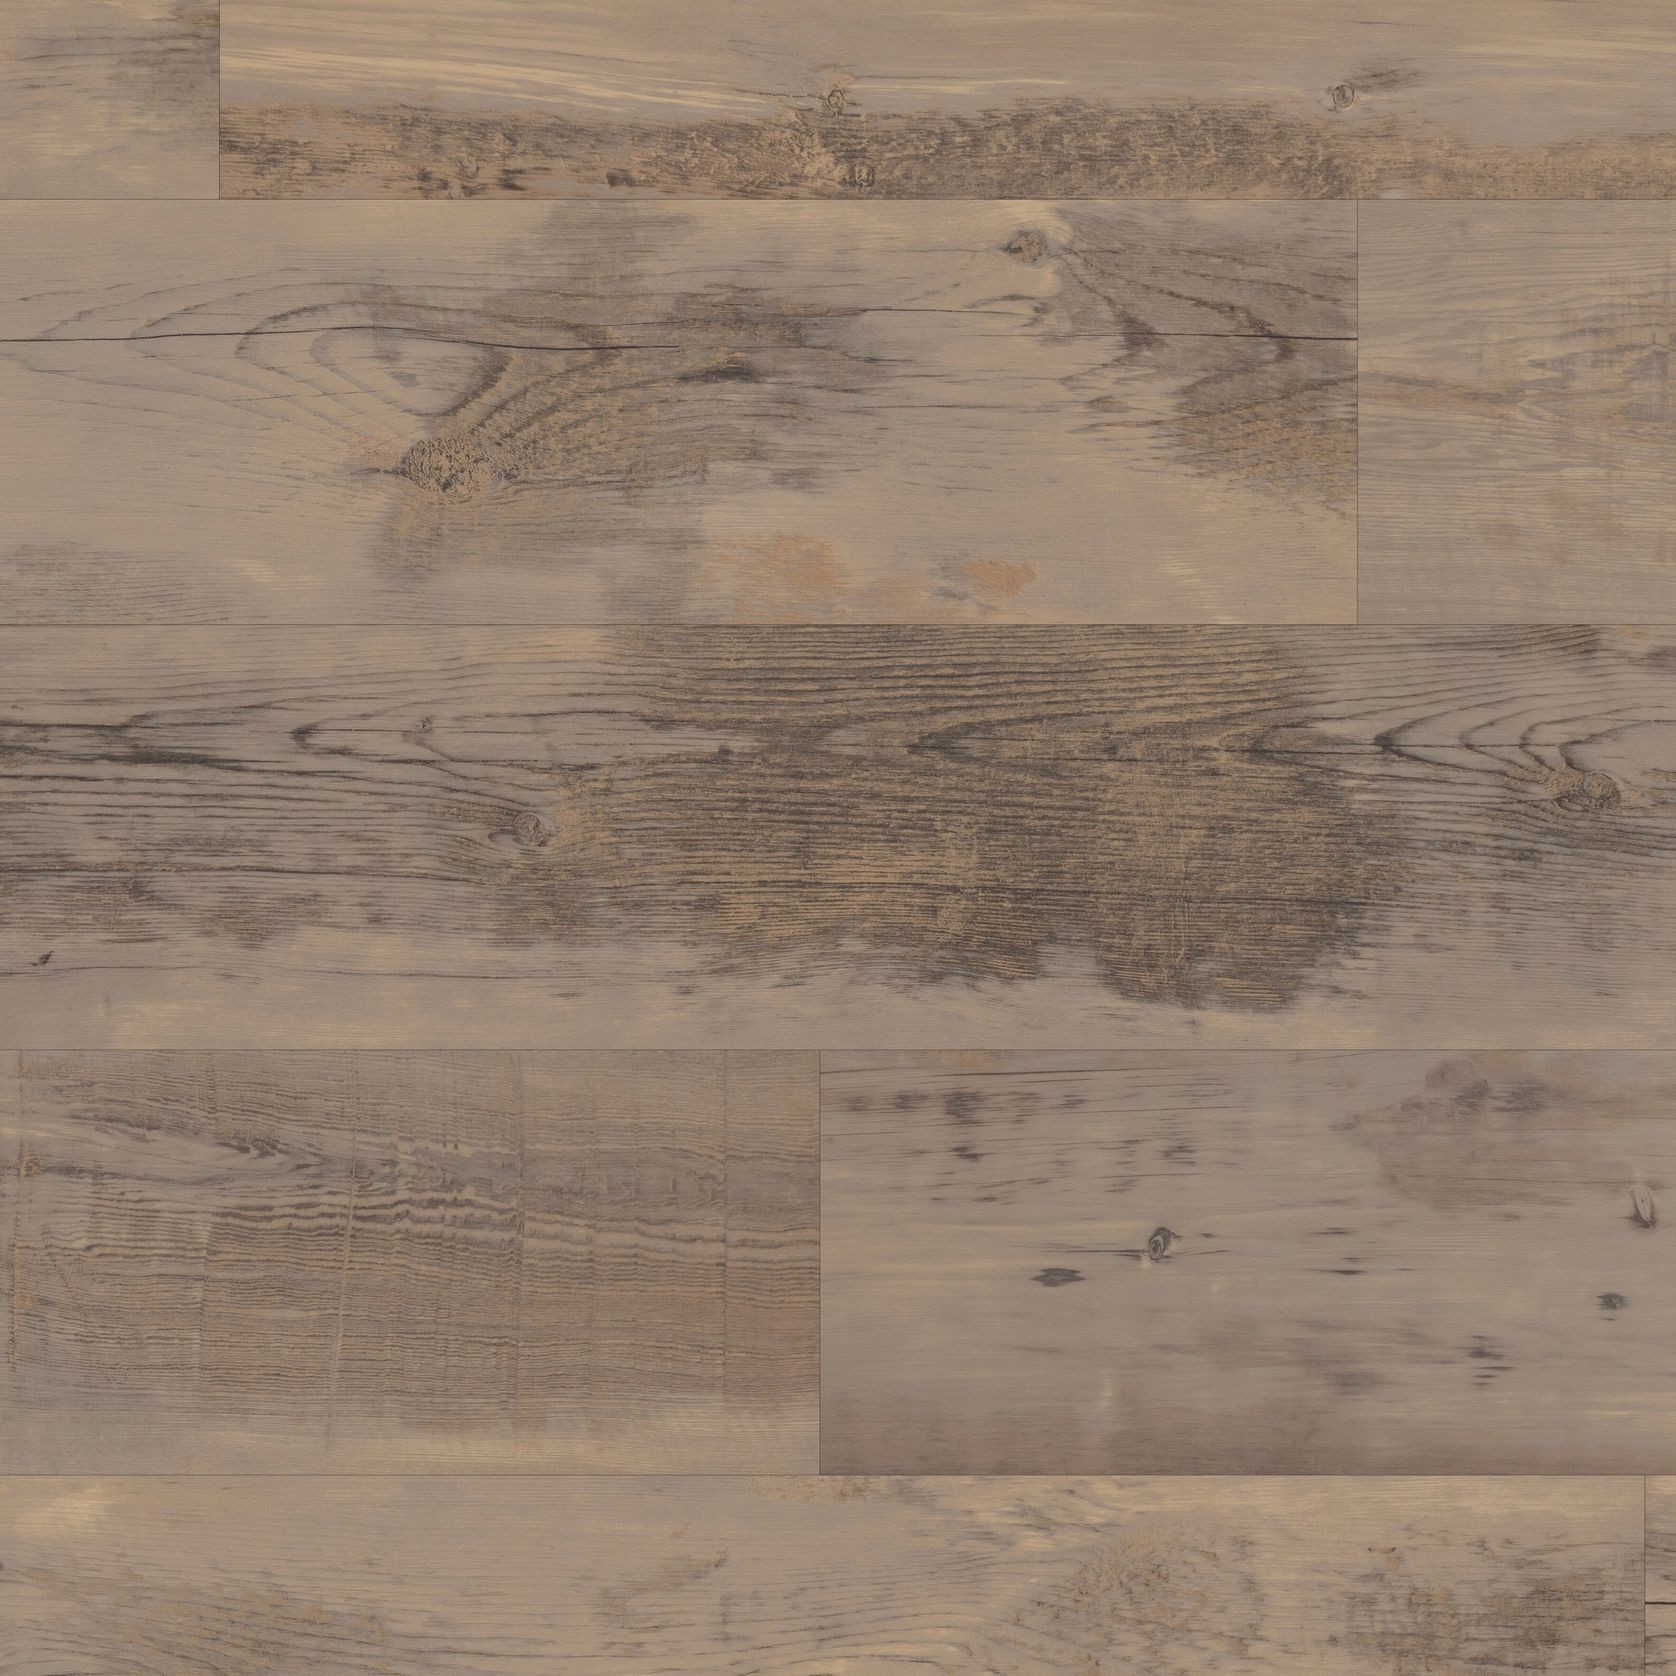 Weathered American Pine Flooring gallery detail image